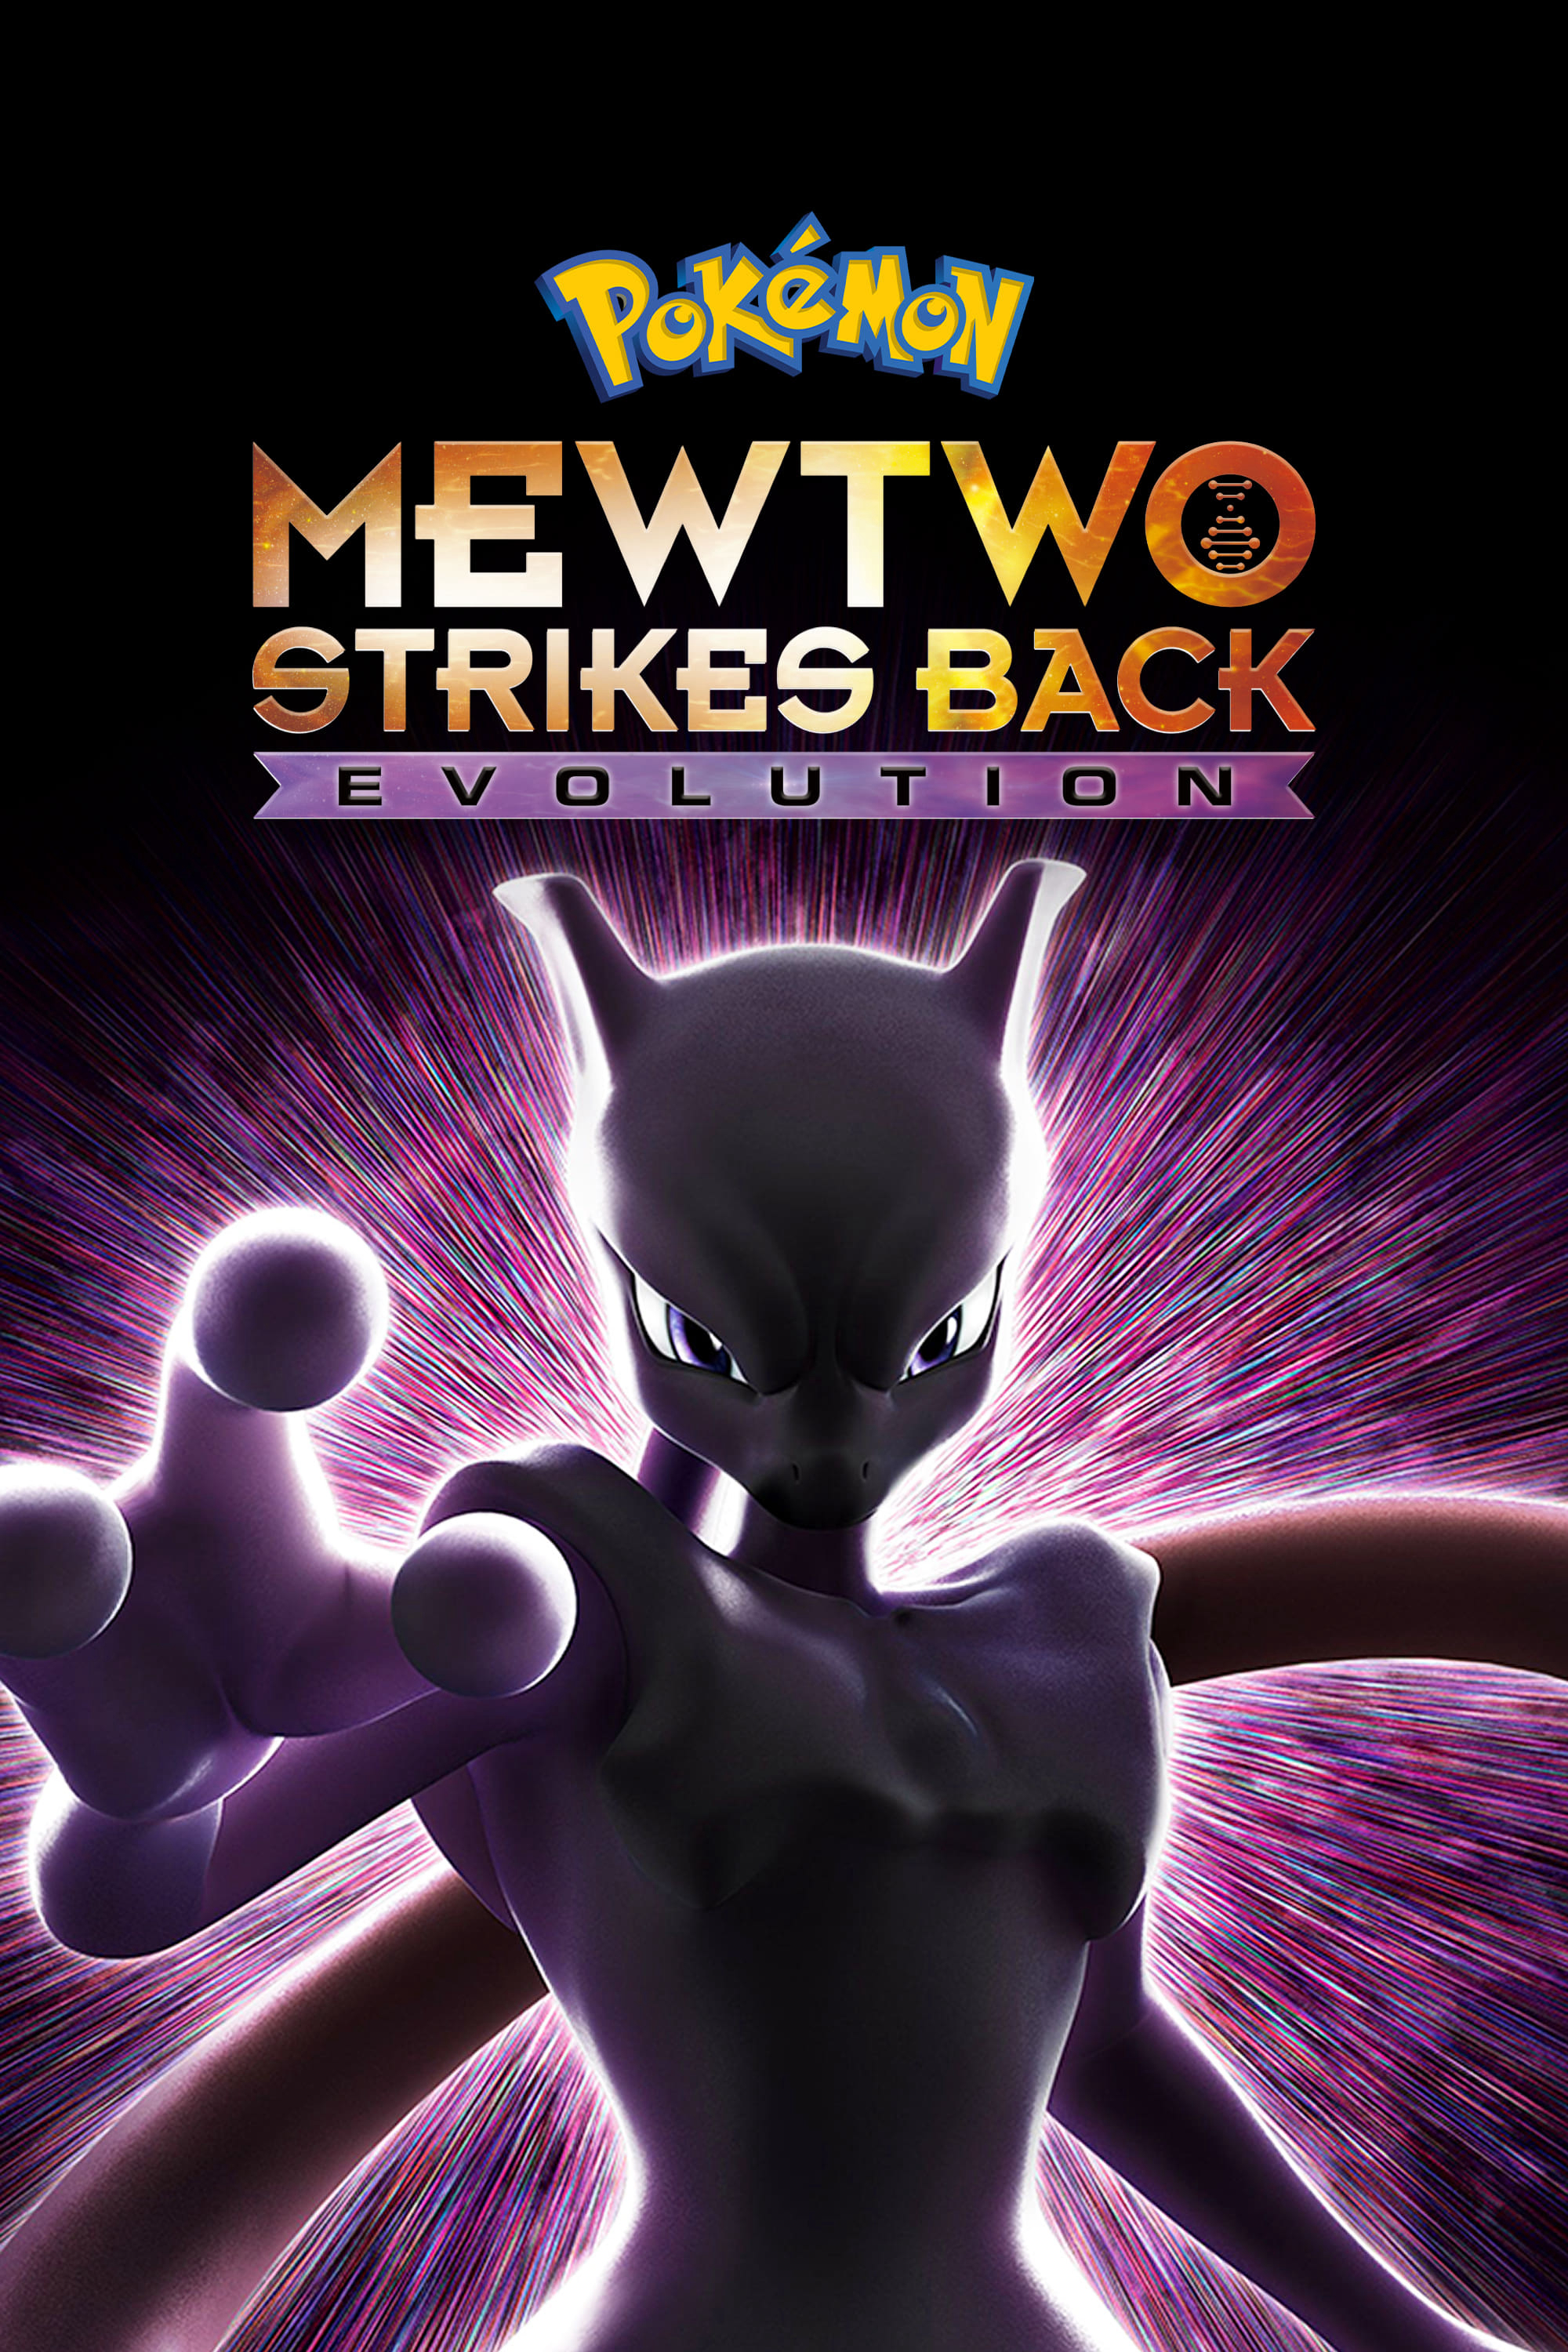 Pokémon the Movie: Mewtwo Strikes Back Evolution - Pokémon the Movie: Mewtwo Strikes Back Evolution